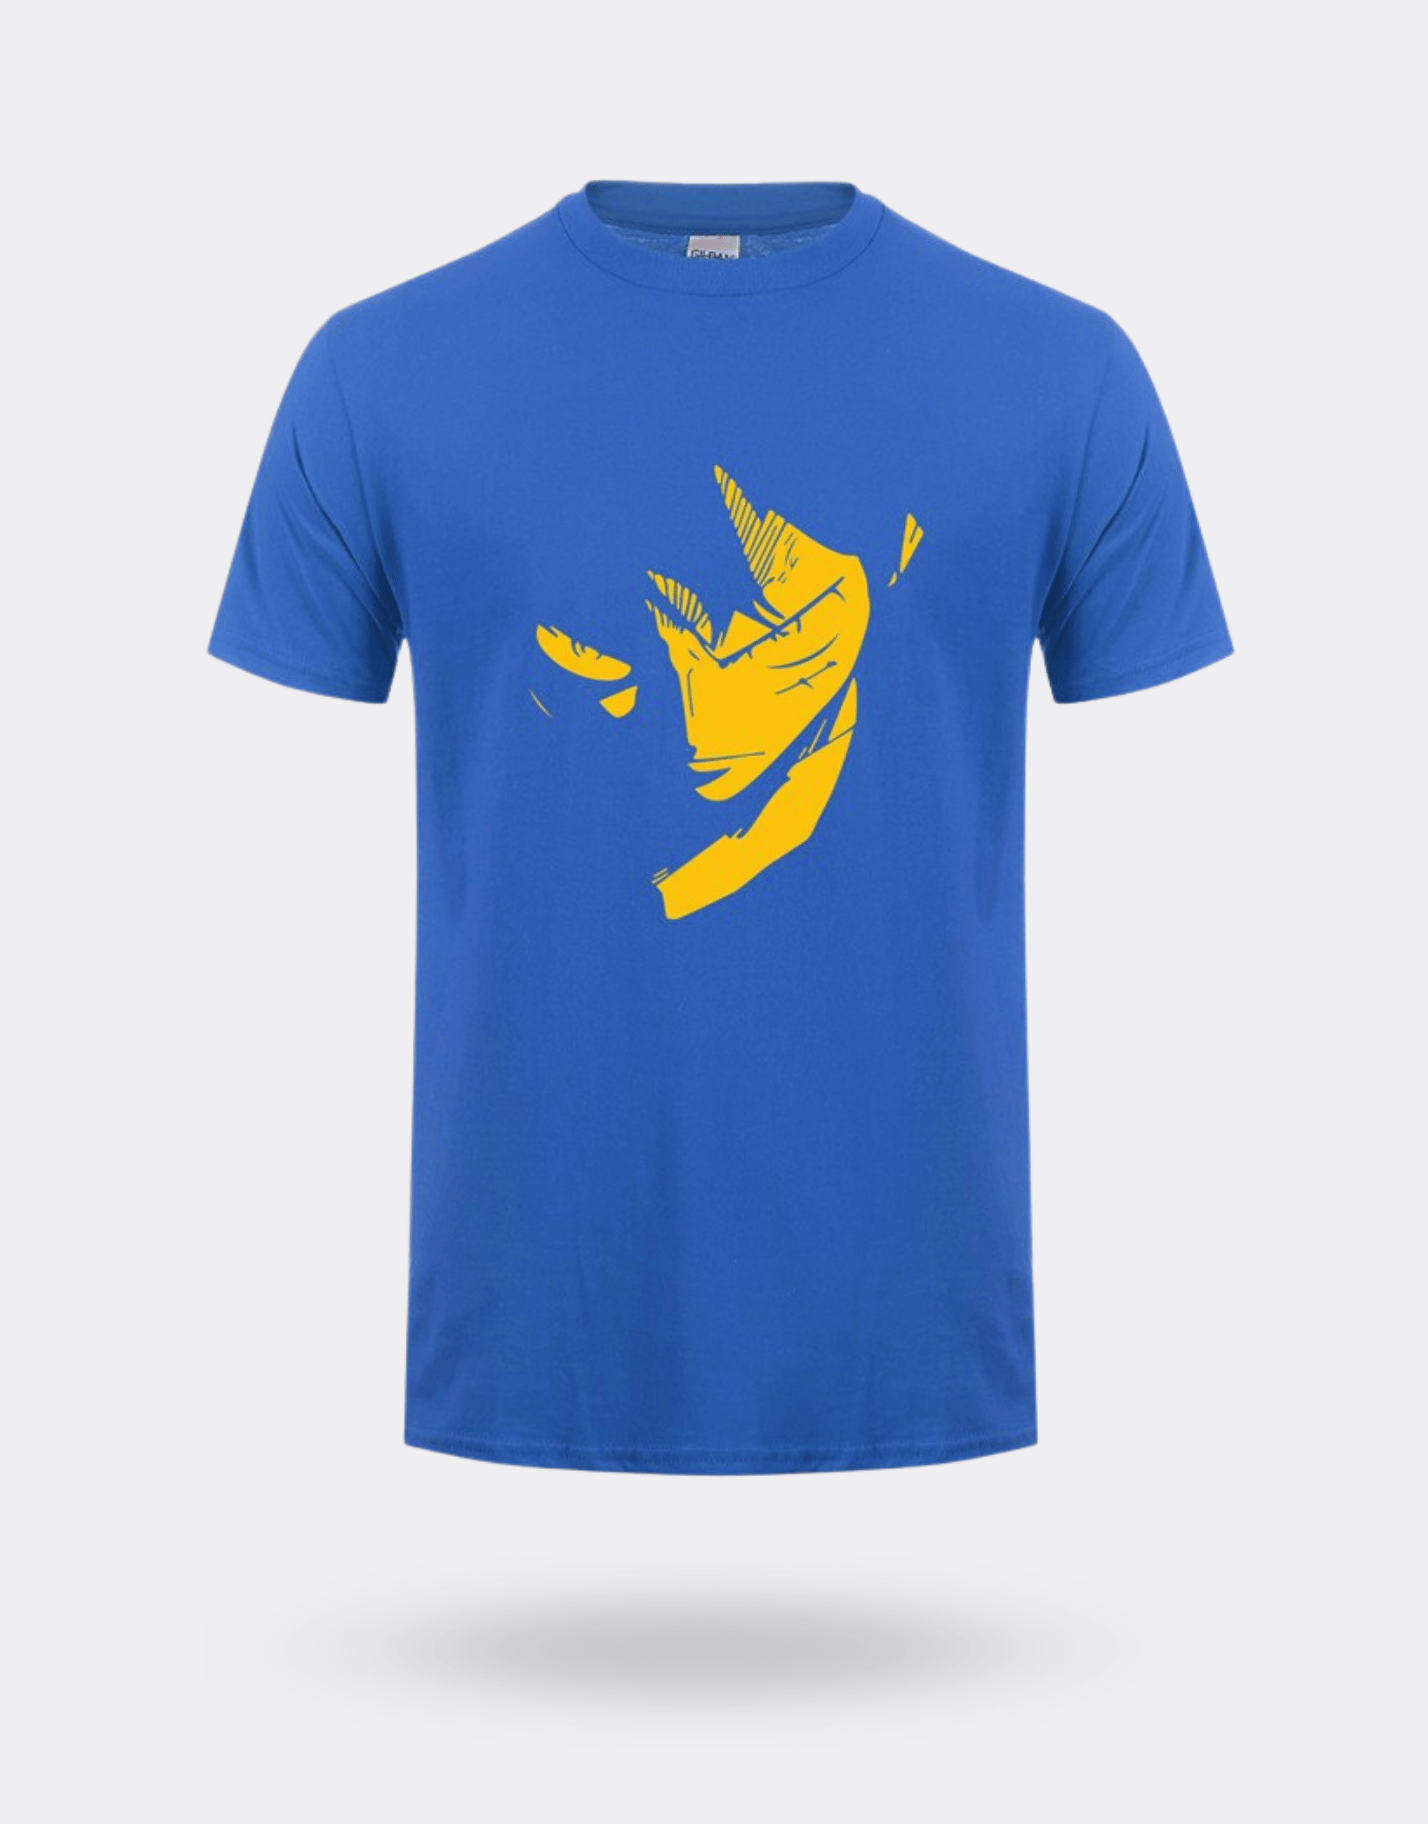 T-shirt One Piece luffy jaune et bleu